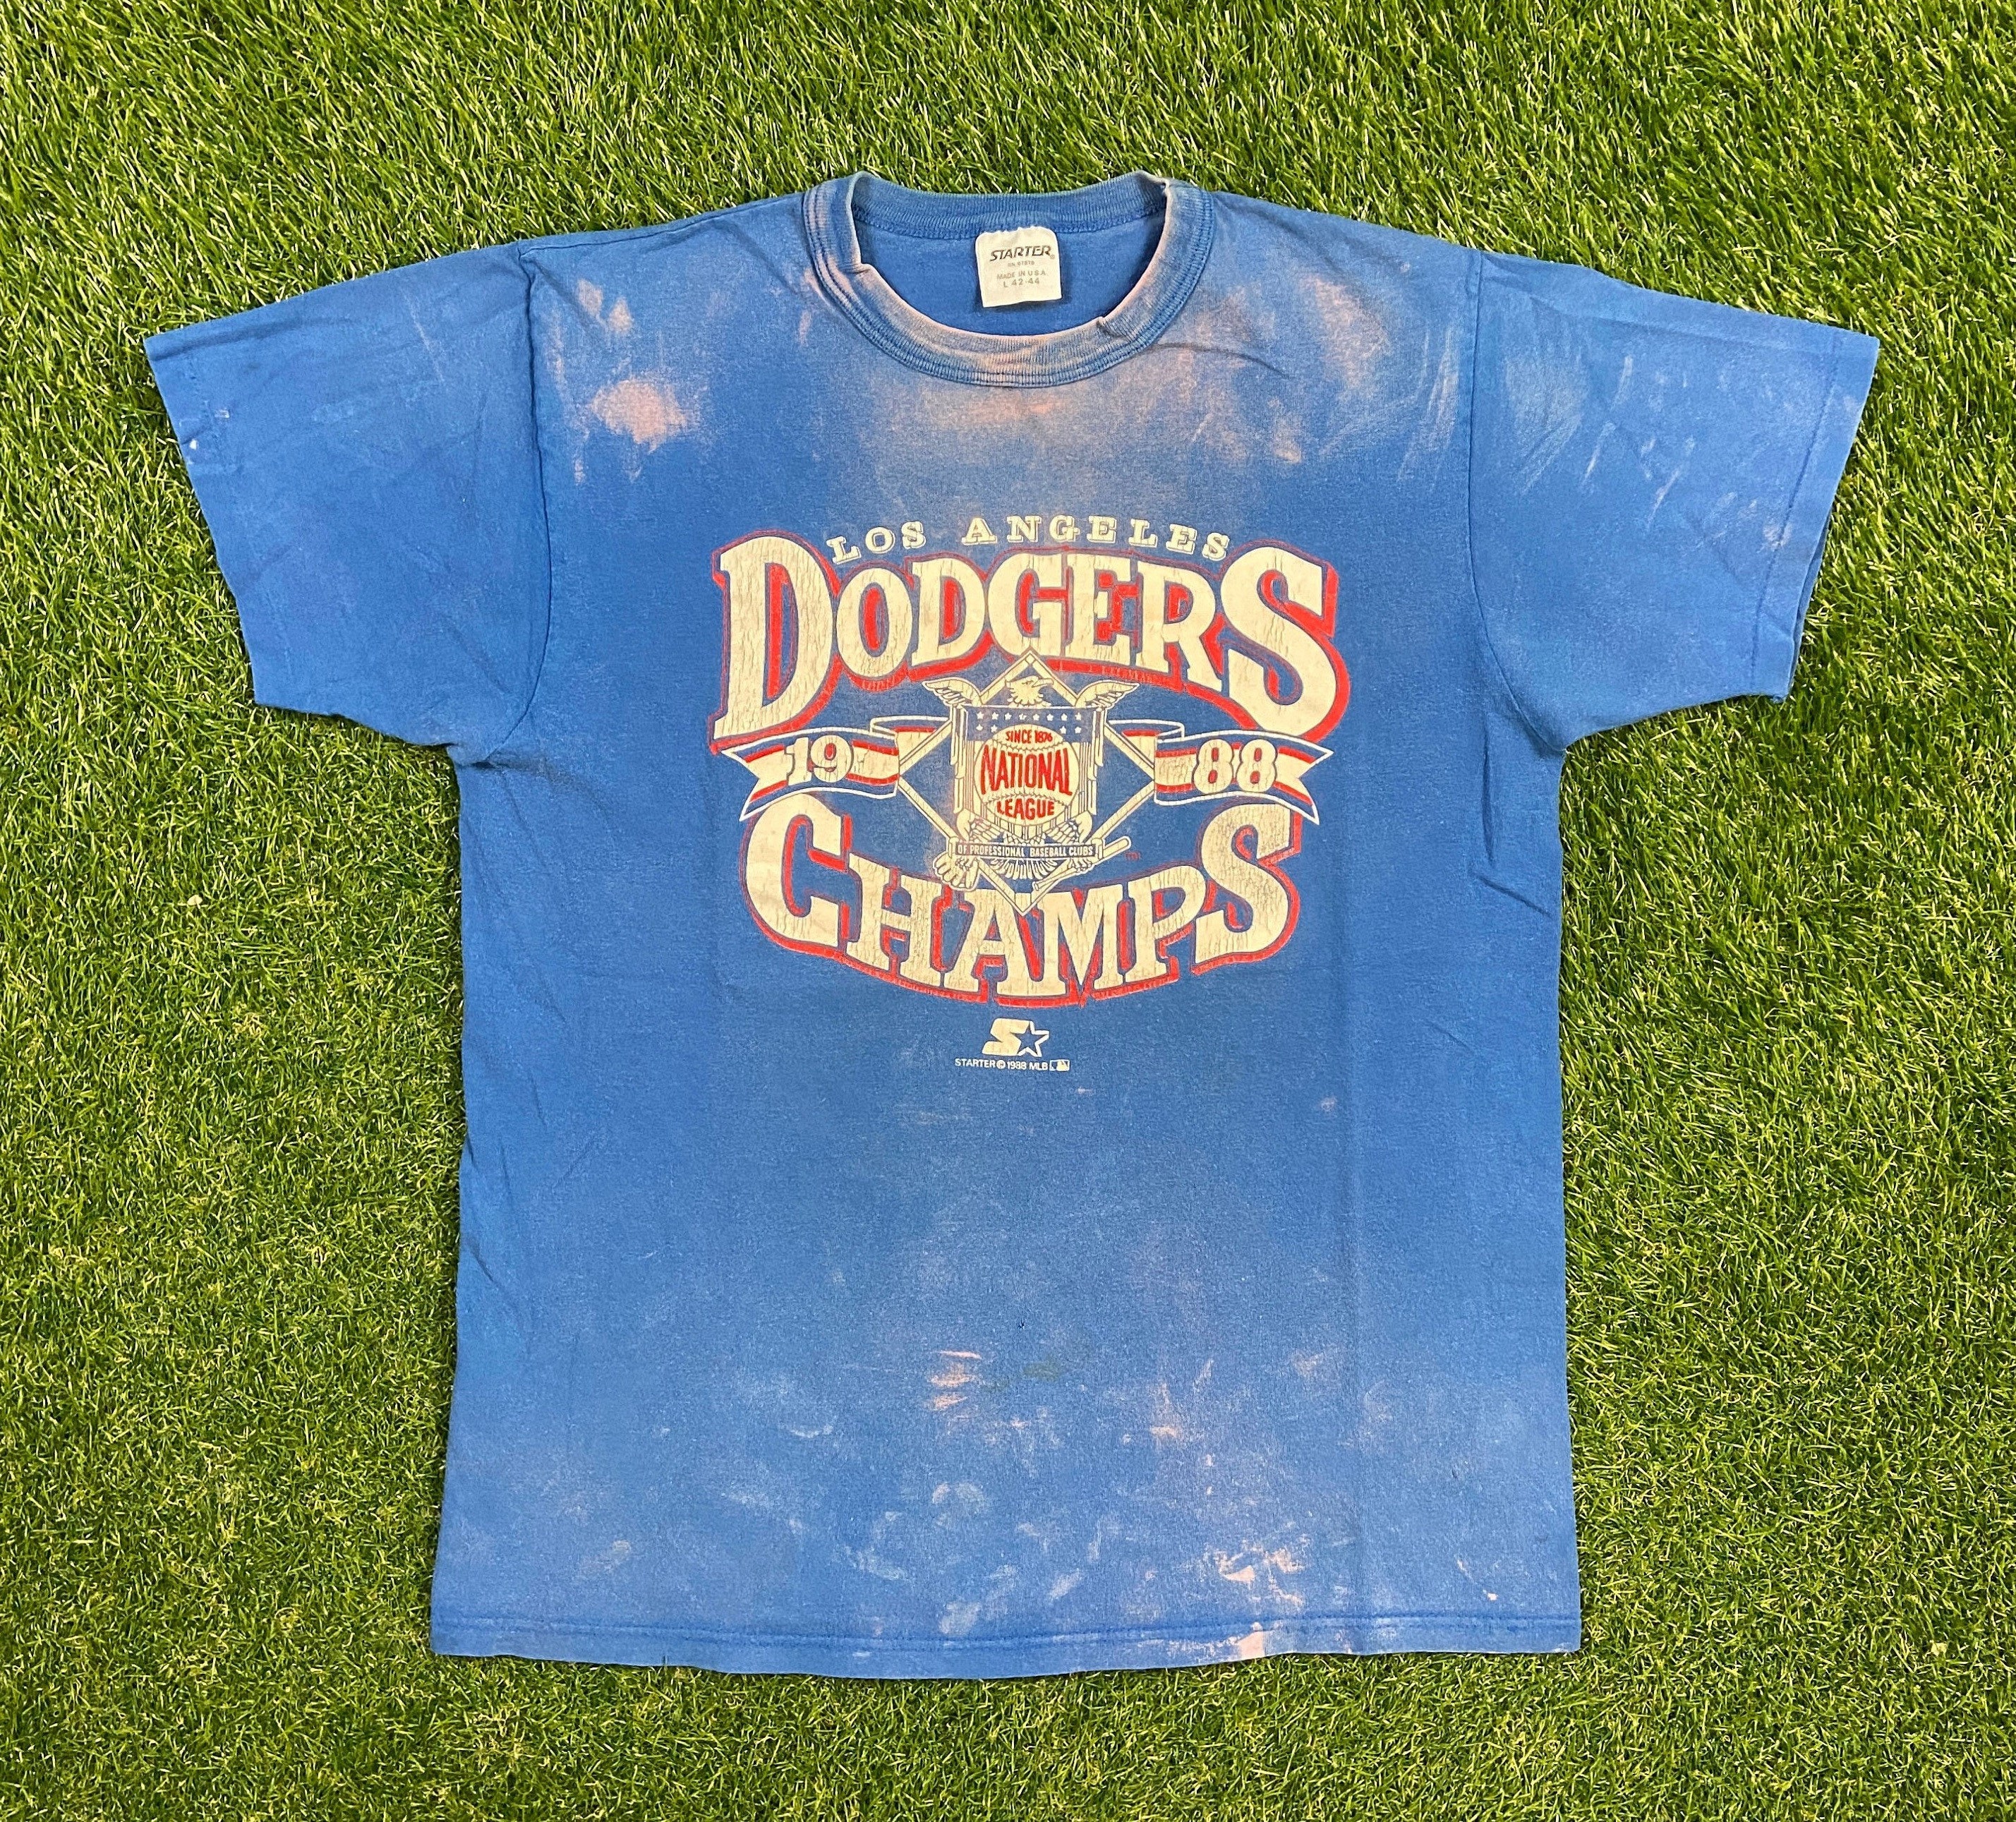 1988 dodgers shirt